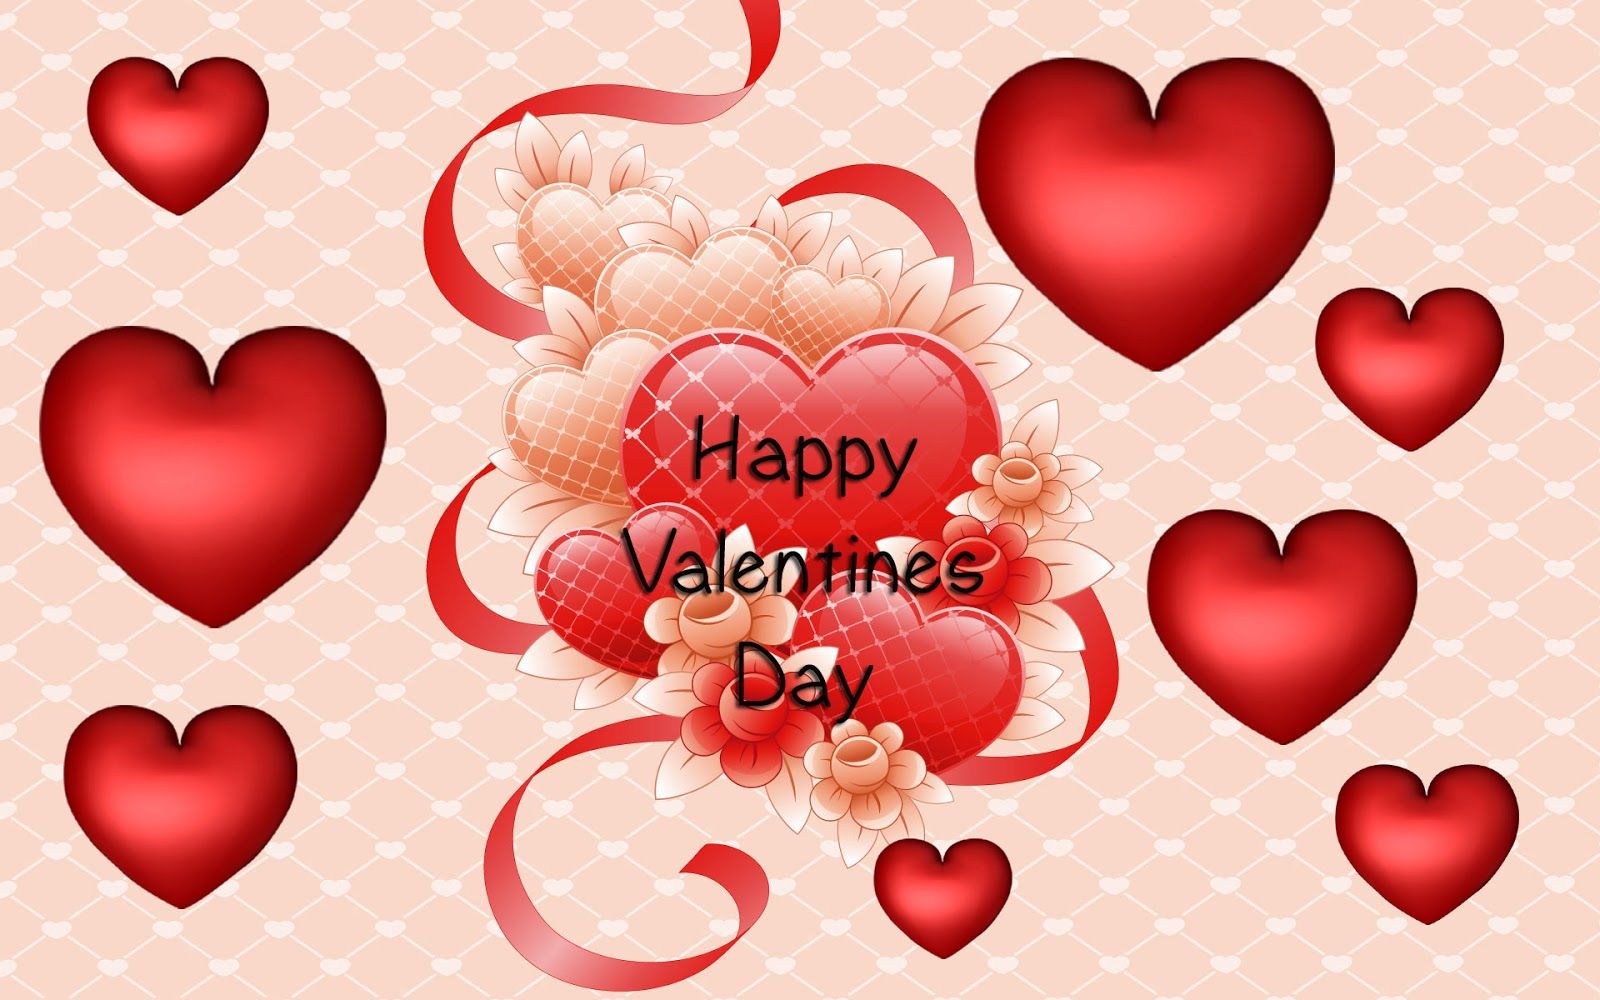 Valentines Day Images Free Download - KibrisPDR